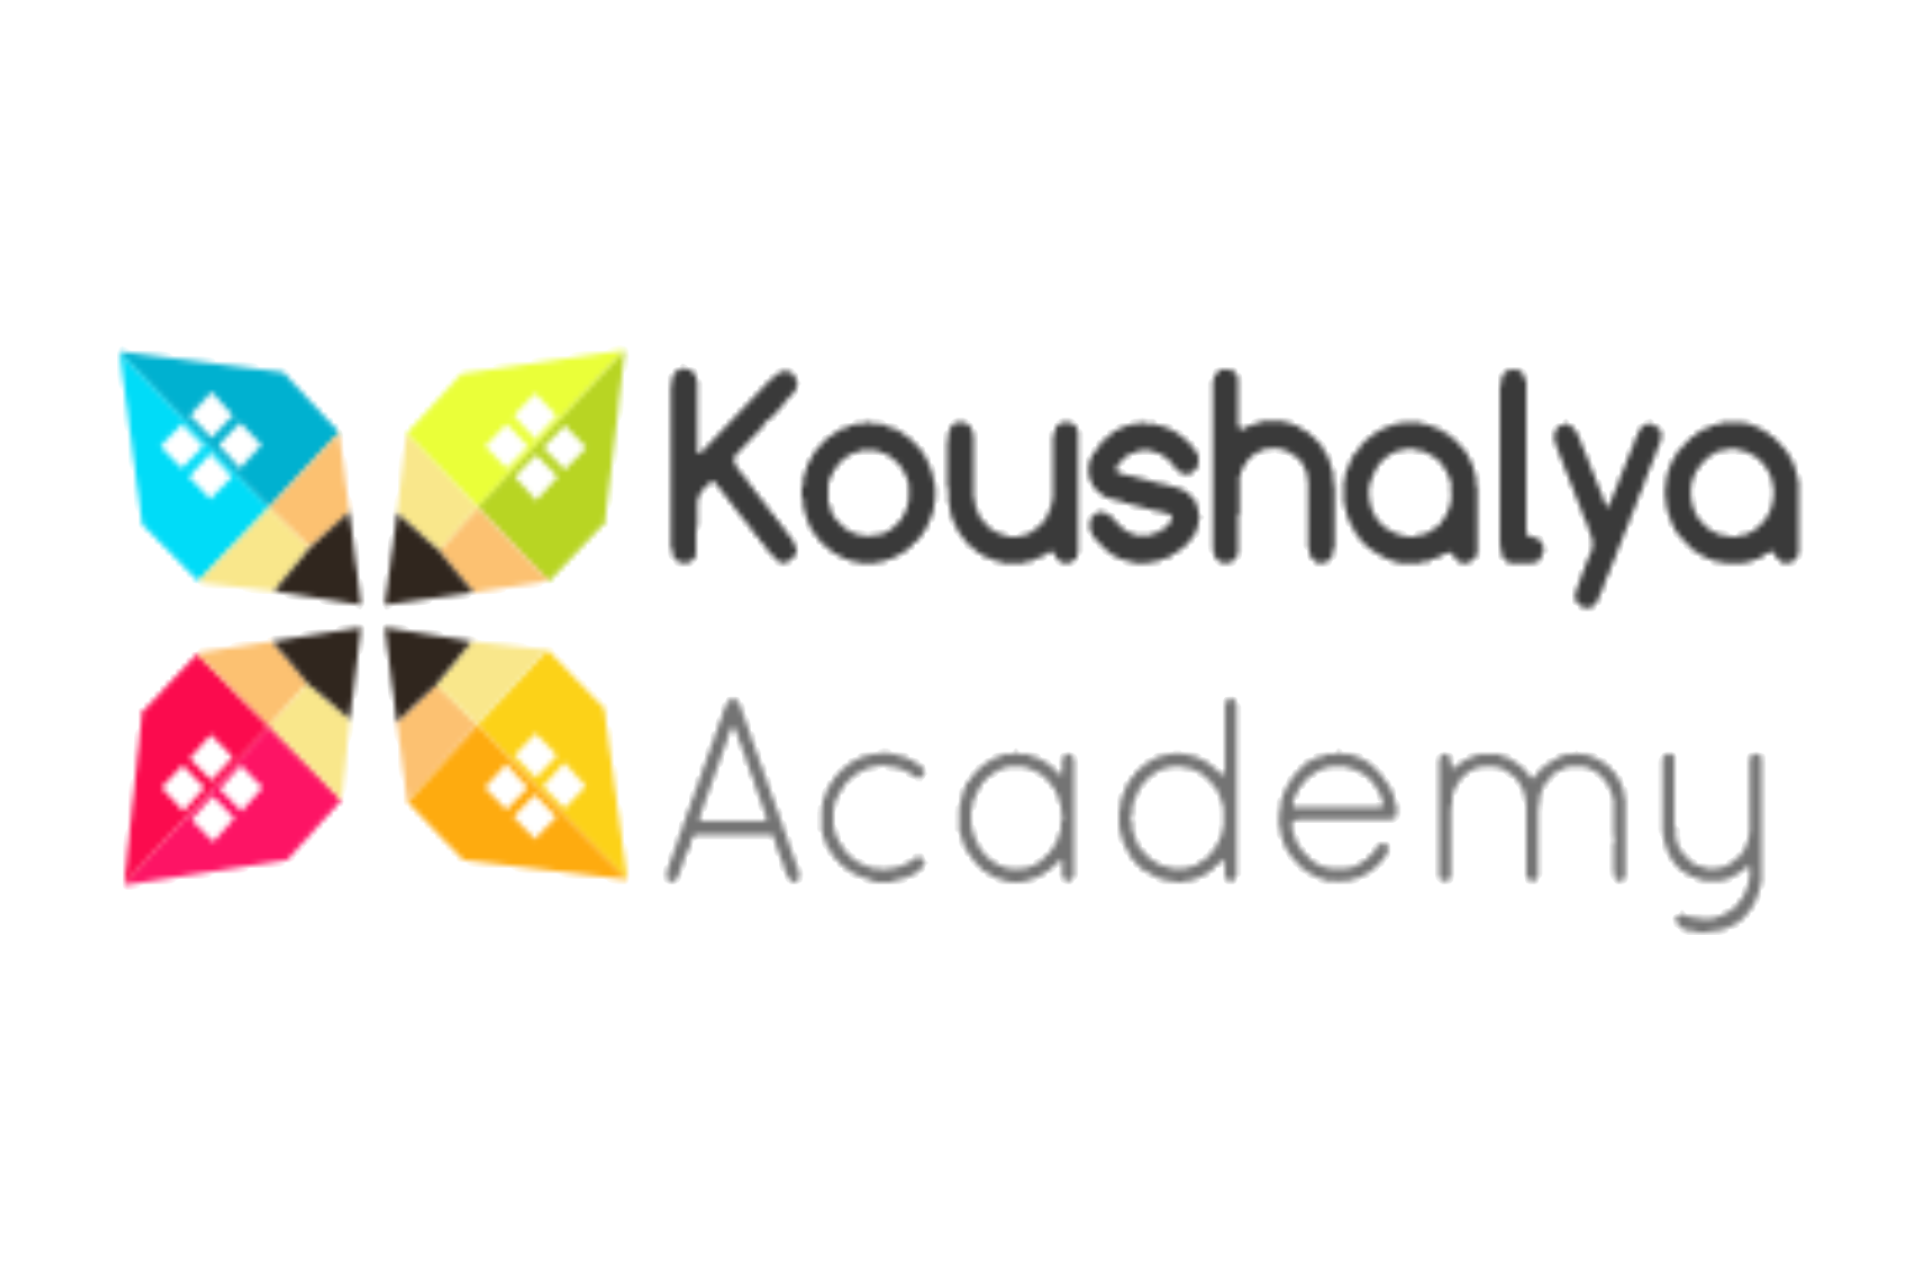 Koushalya Academy